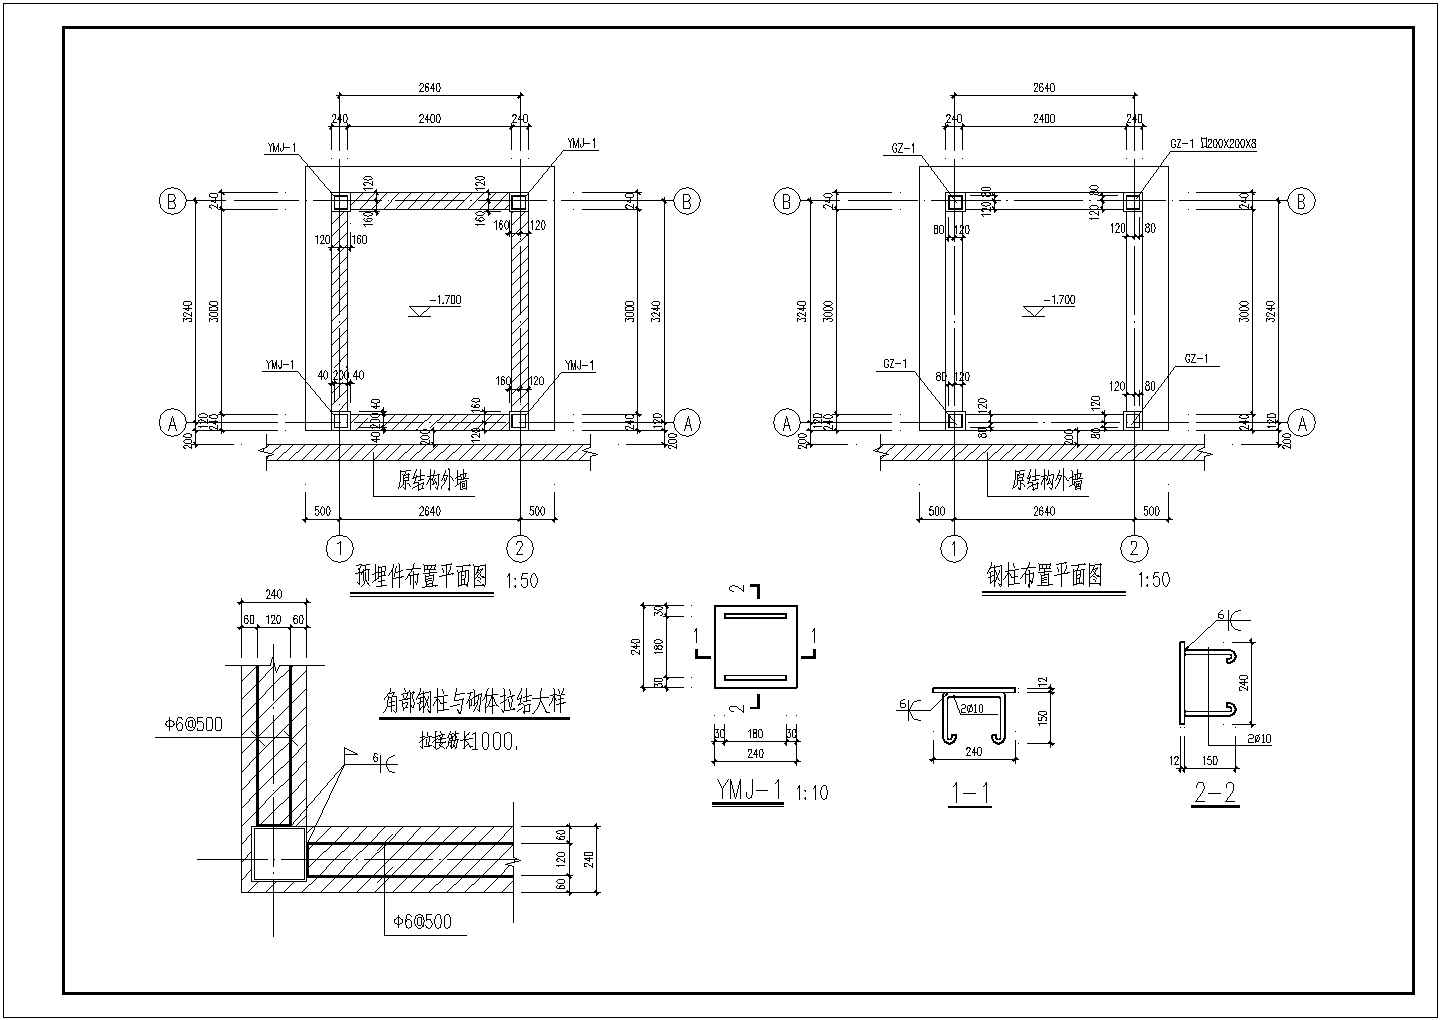 某工程钢结构室外观光电梯井道结构方案图纸